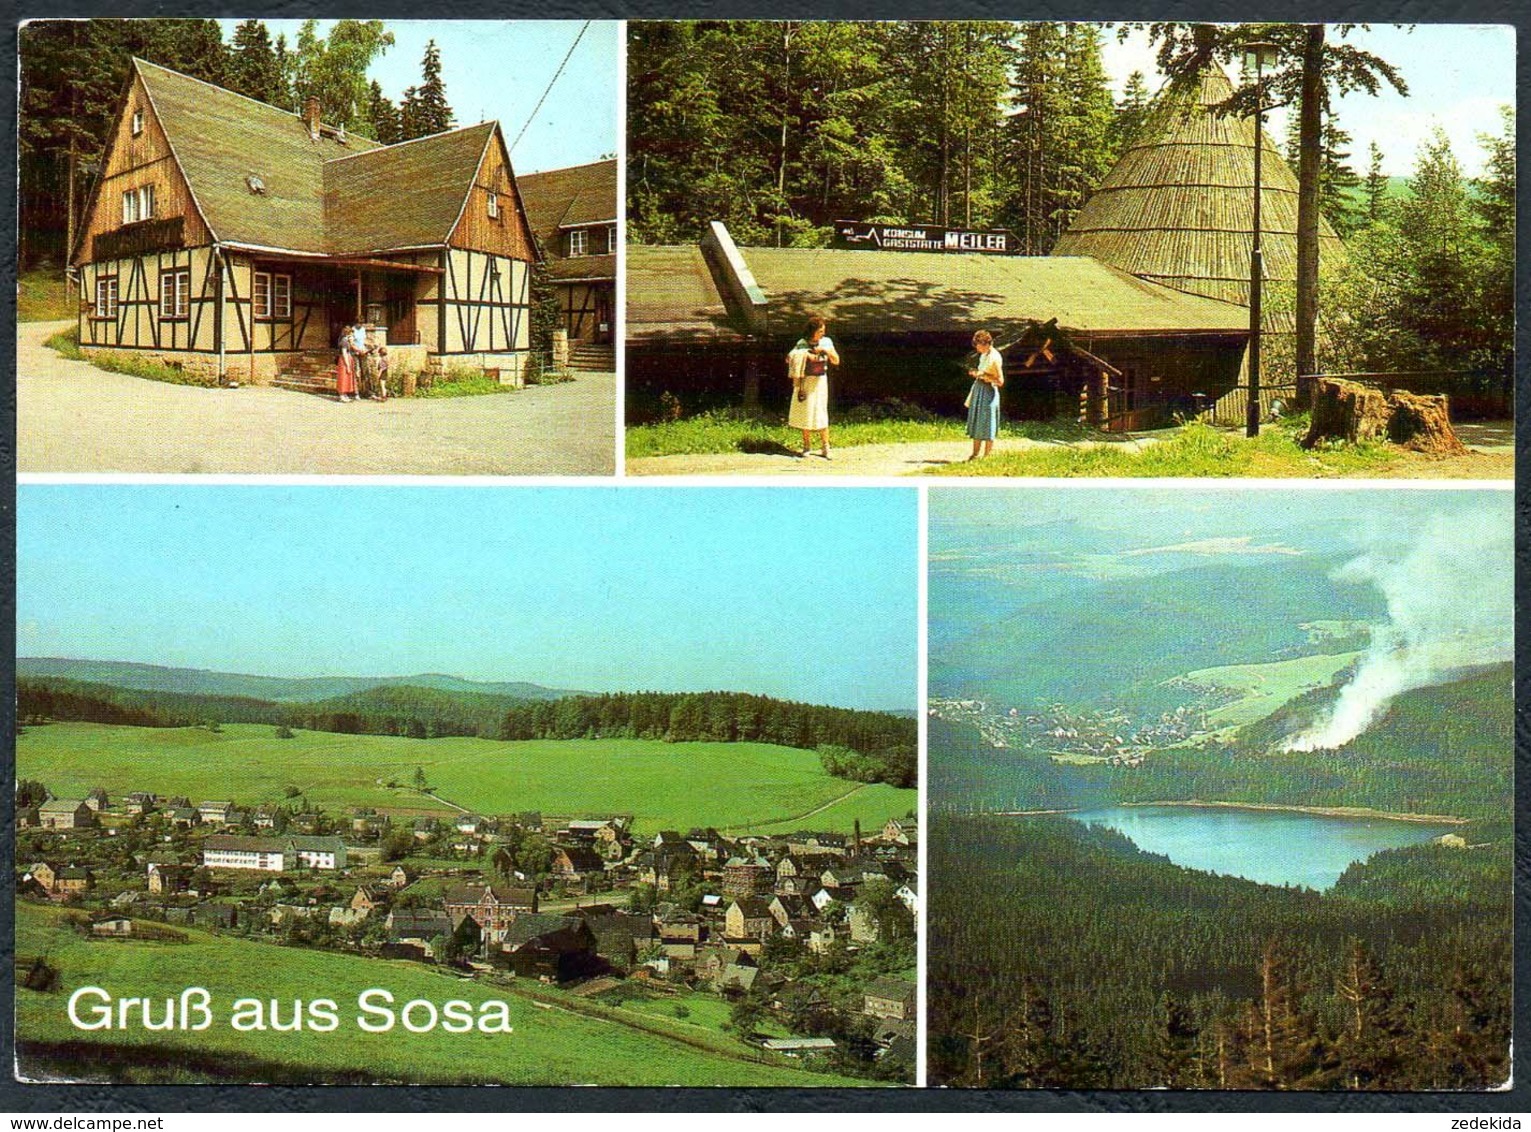 D6667 - Sosa Köhler Hütte Meiler - Bild Und Heimat Reichenbach - Sosa